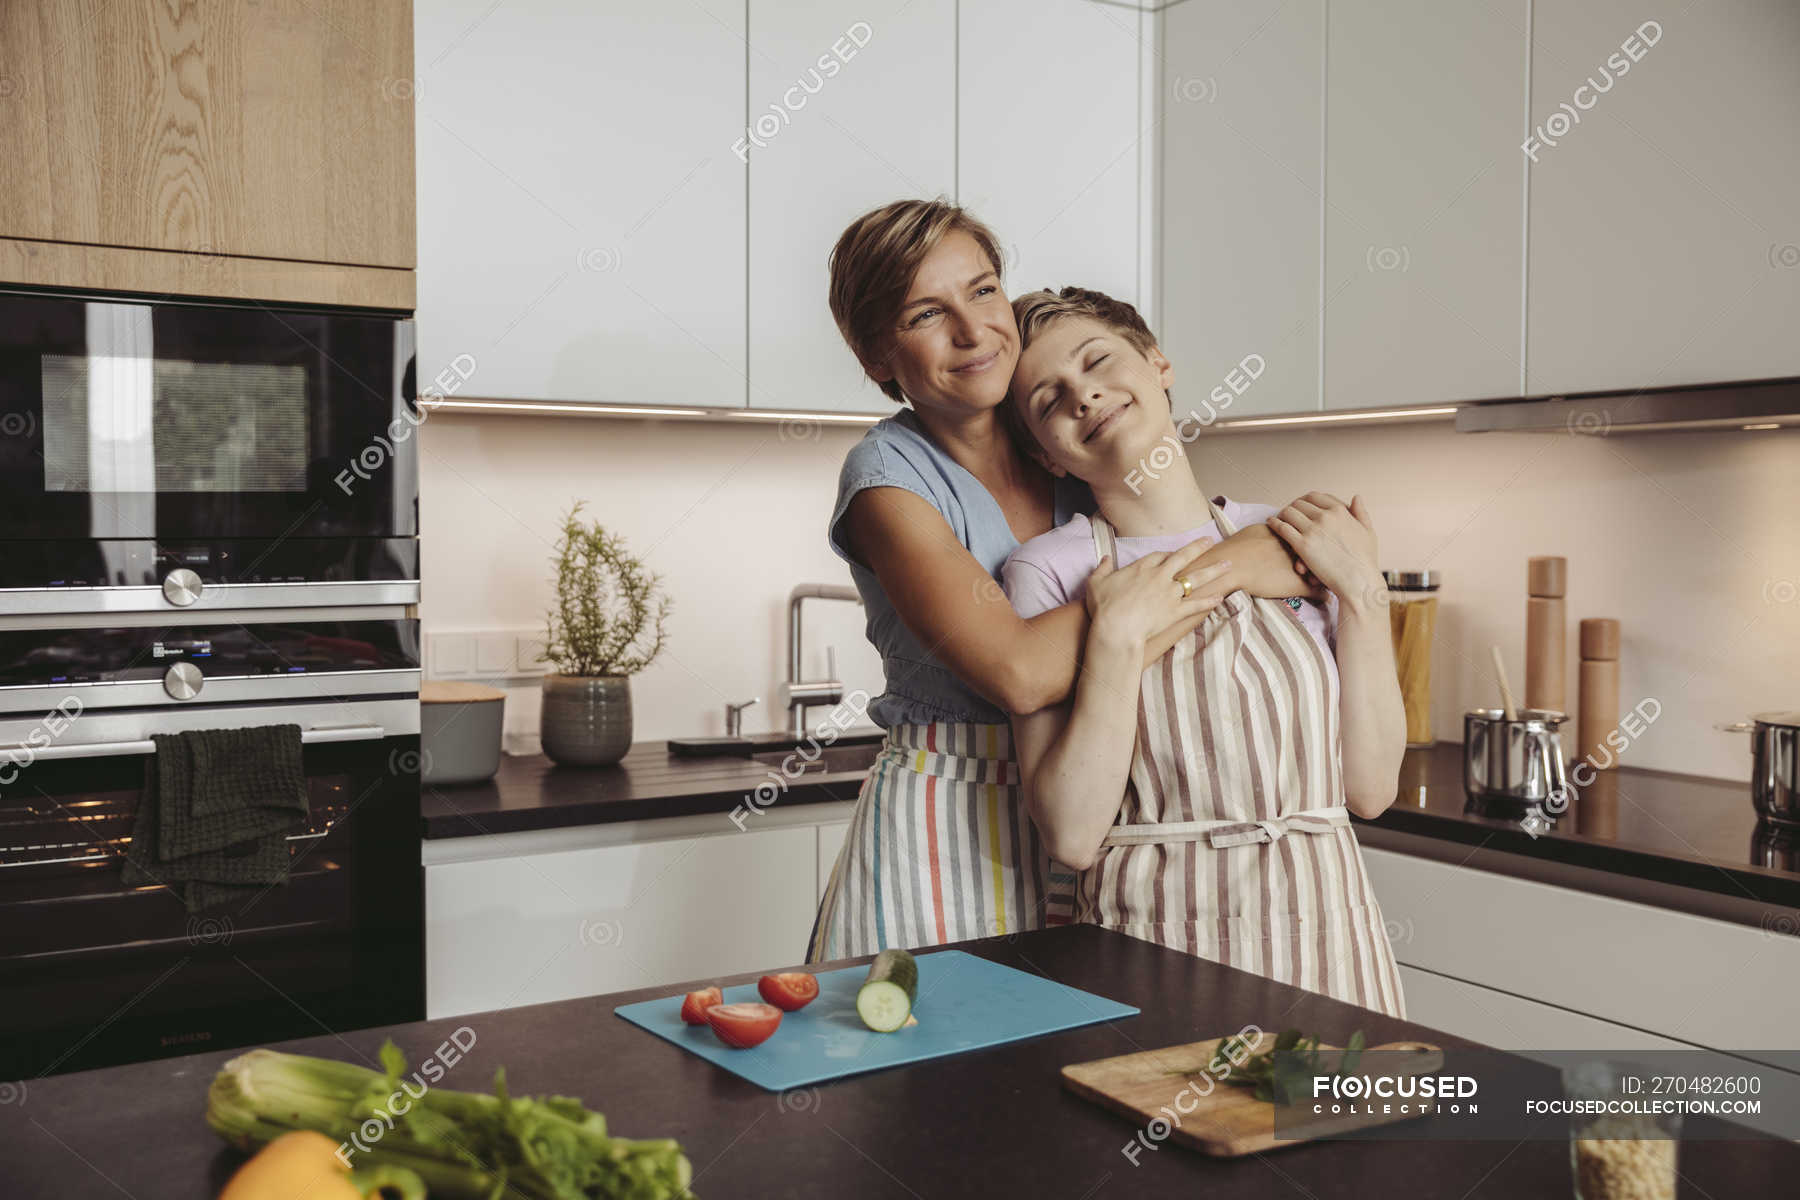 Lesbians In Kitchen